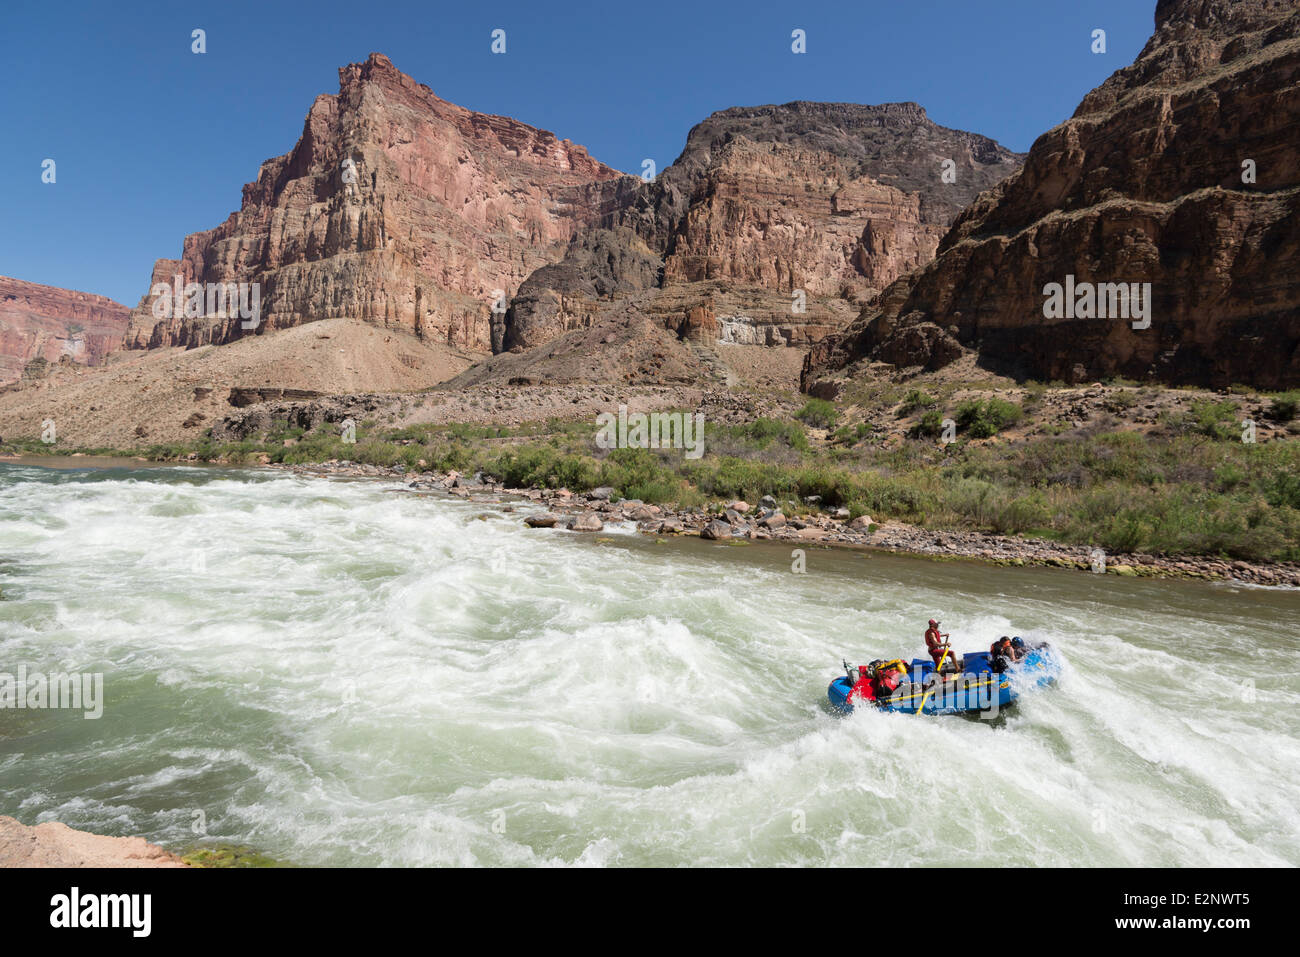 Chutes de lave de rafting sur le fleuve Colorado dans le Grand Canyon, Arizona. Banque D'Images